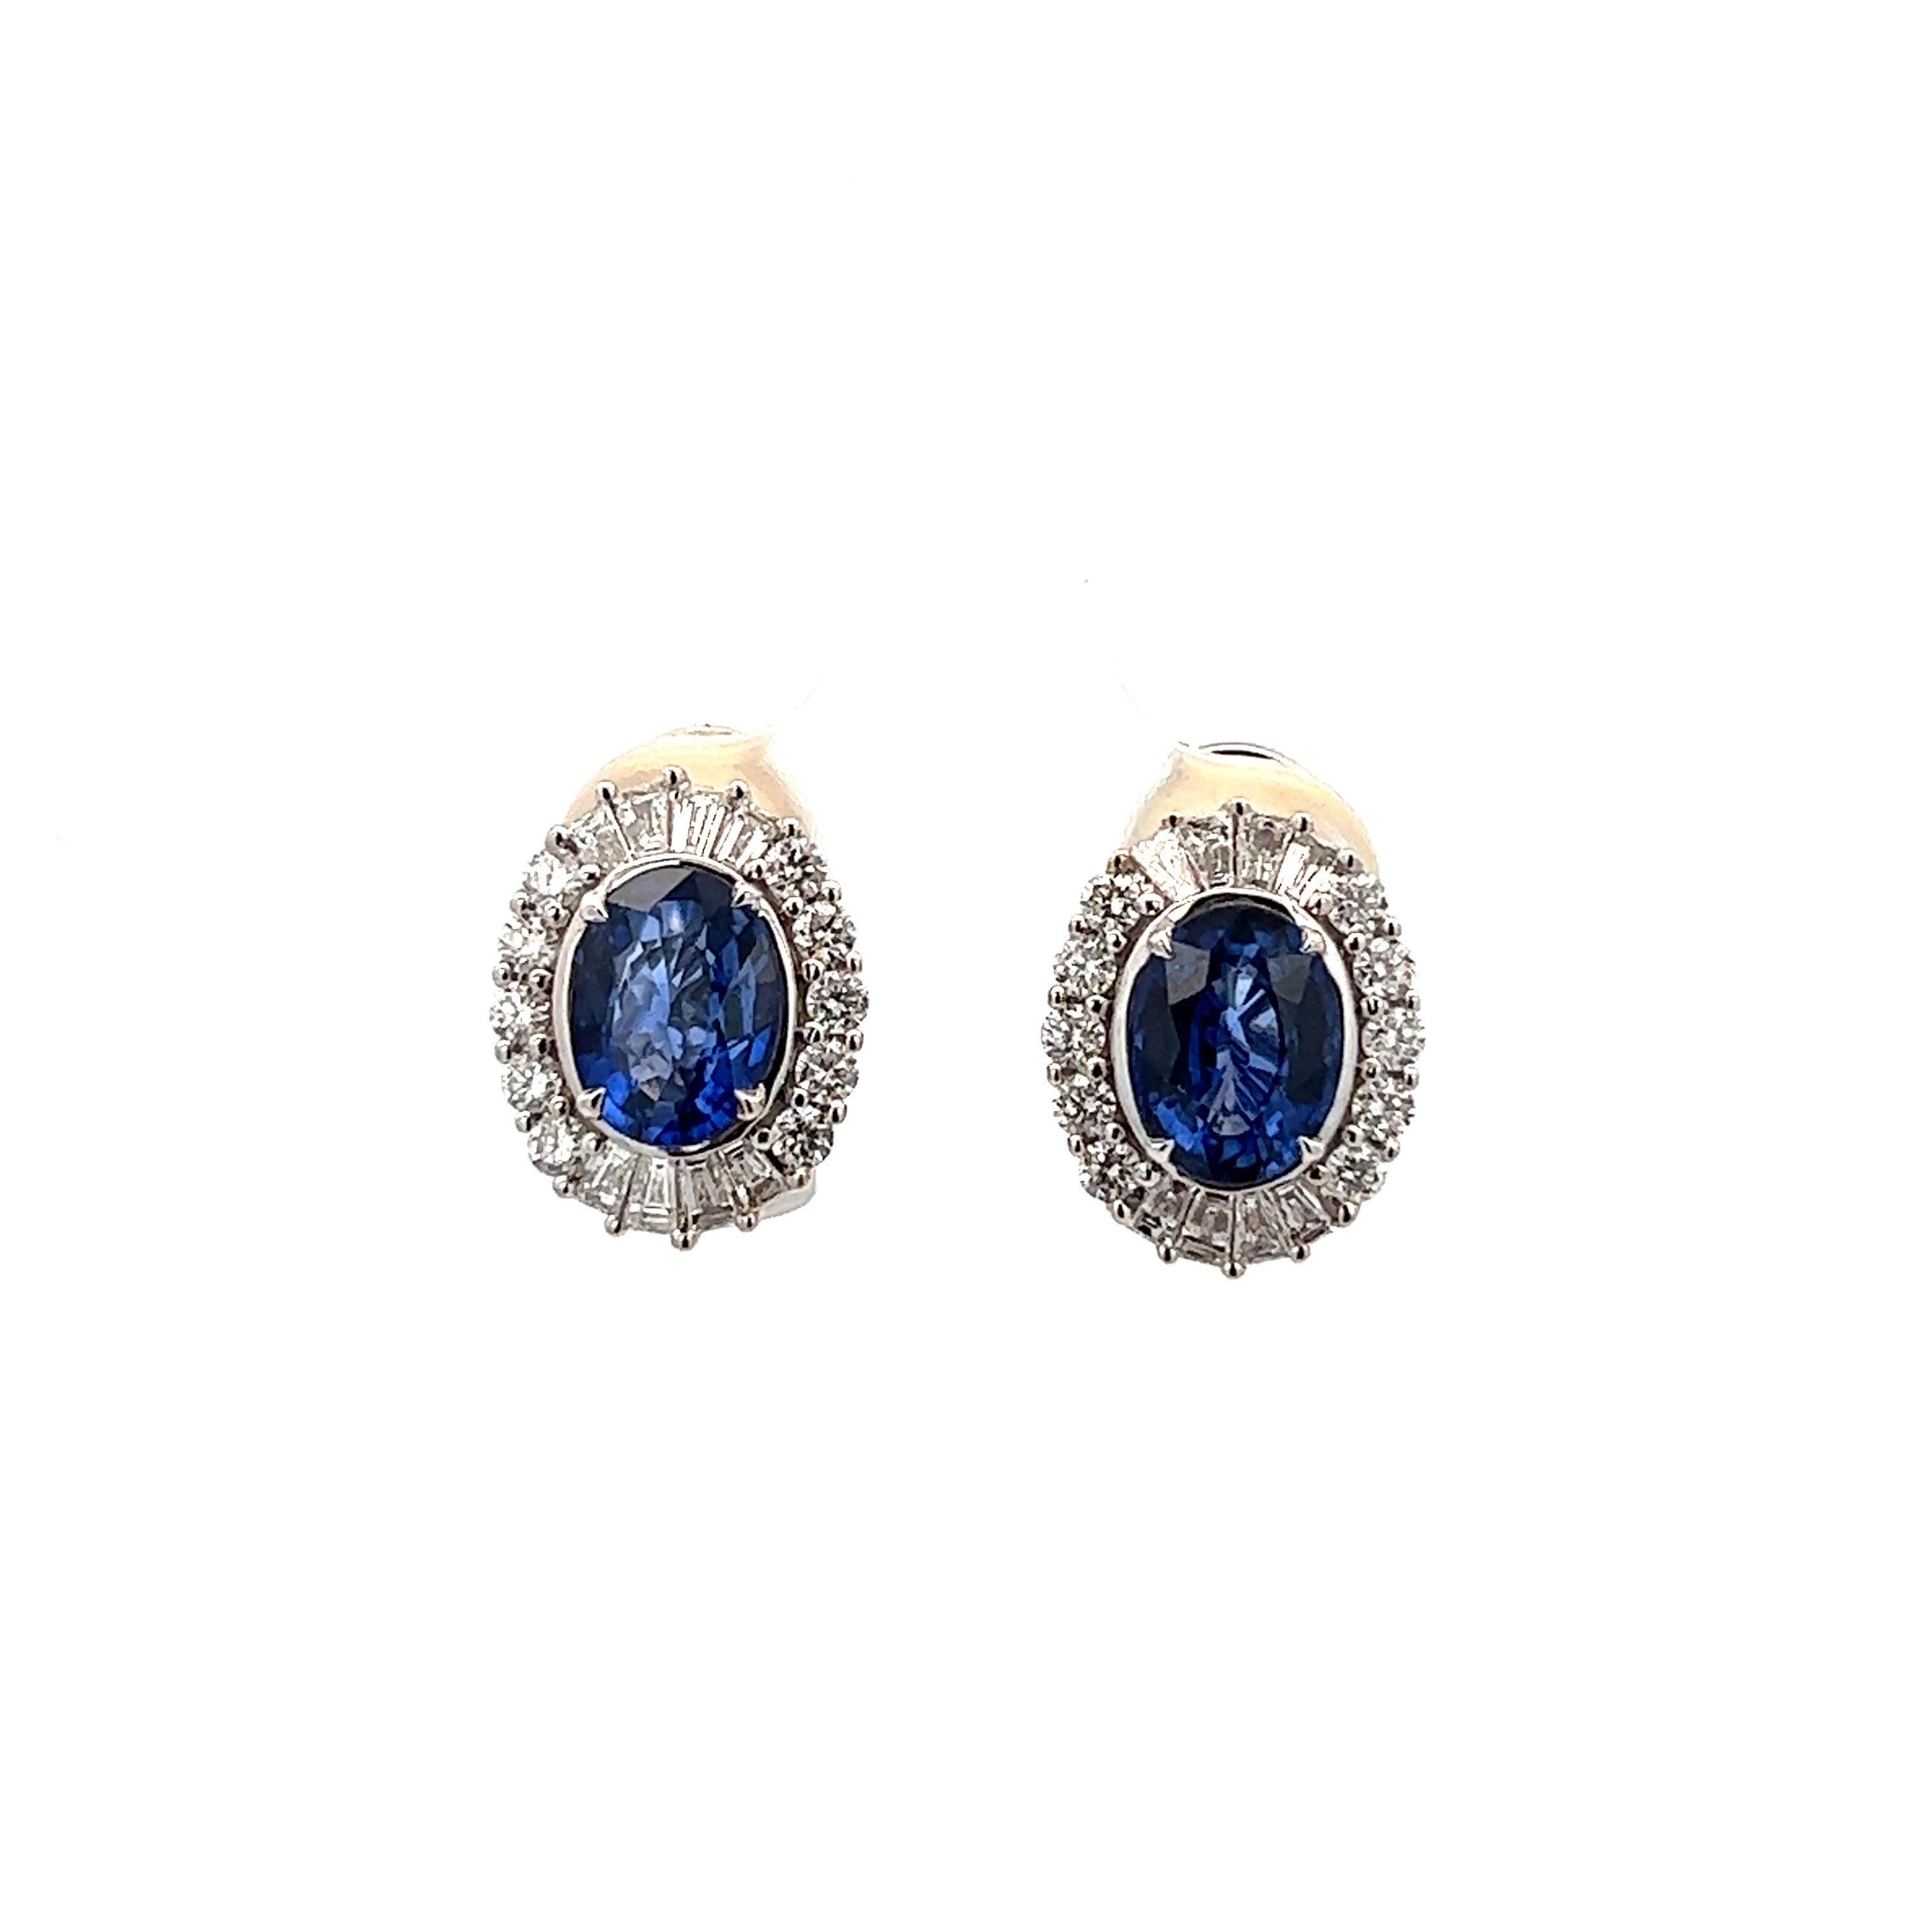 Wunderschöne blaue Halo-Saphir-Ohrringe mit 14 KW Fassung
3,20ct Saphir
0,94ct Diamanten

Insgesamt 4,14 ct

Klarheit VS2-S1
GH-Farbe